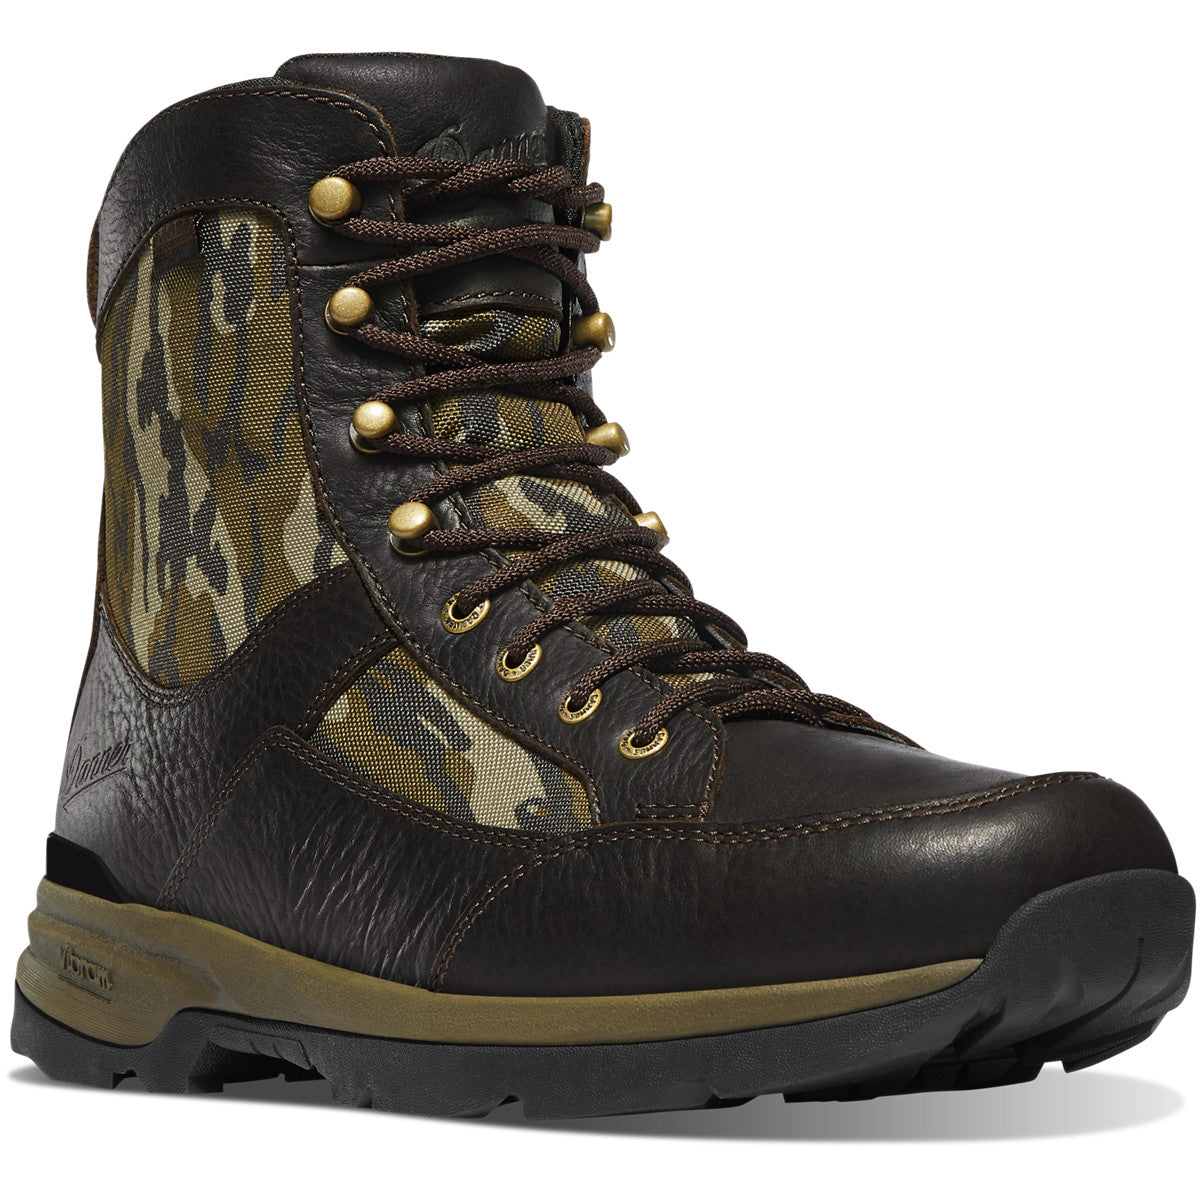 Danner Men's Recurve 7" WP Hunt Boot - Mossy Oak Bottomland - 47613 7 / Medium / Mossy Oak - Overlook Boots